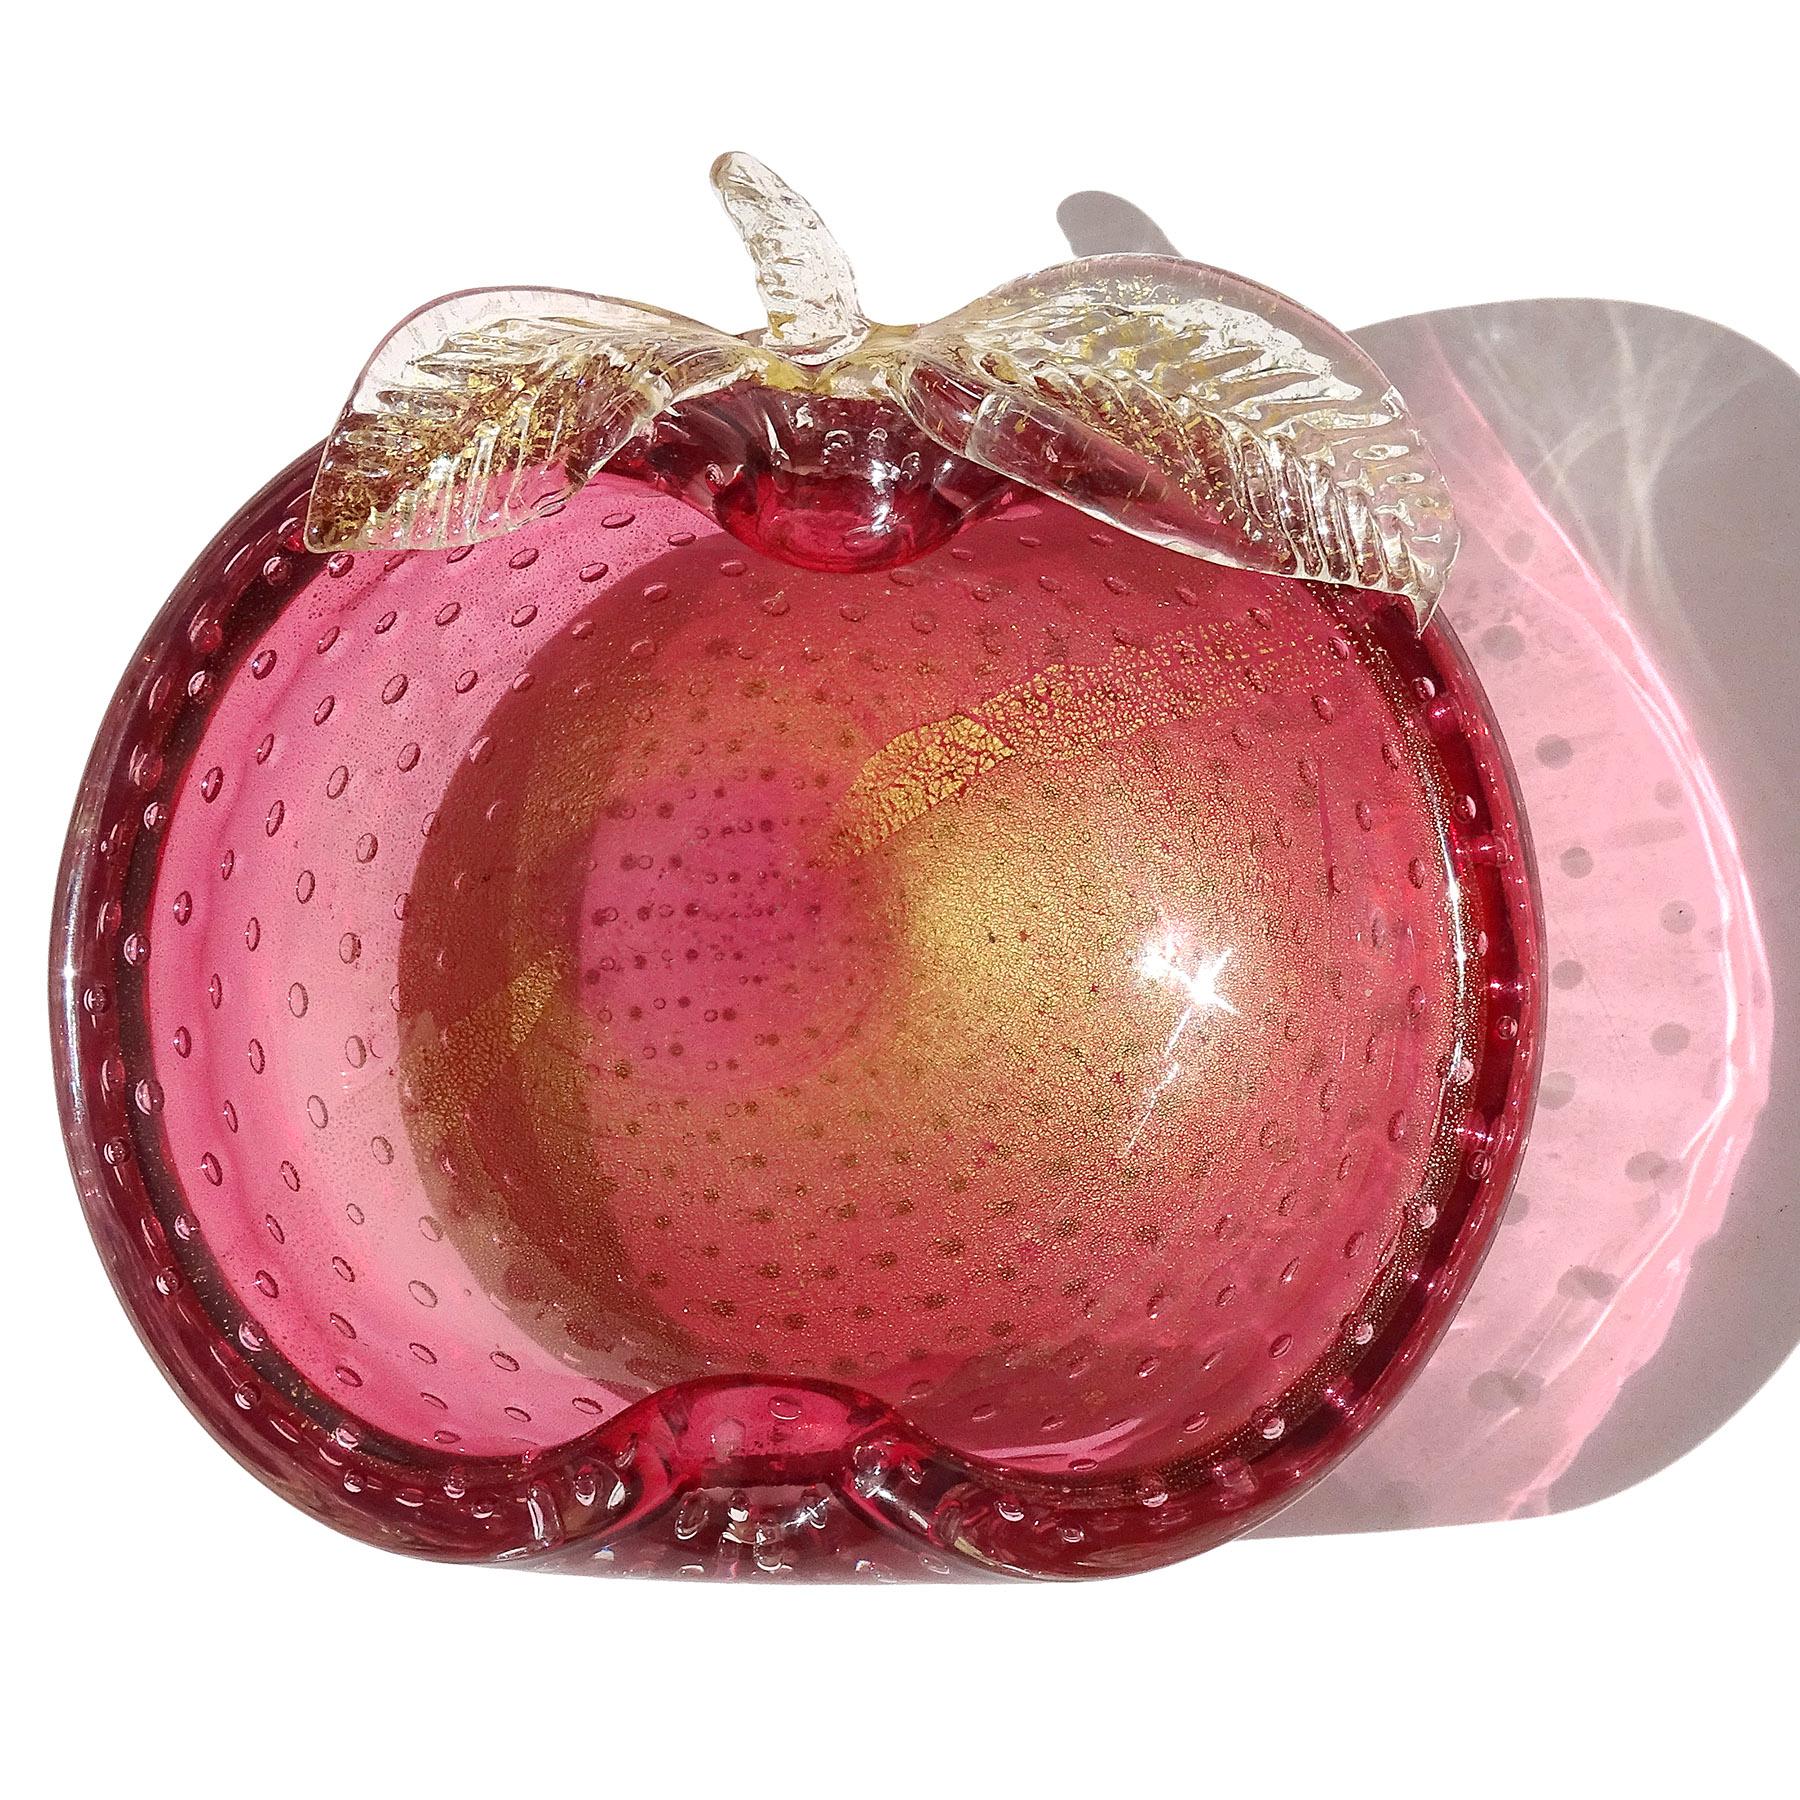 Magnifique bol / vide poche en verre d'art italien soufflé à la main de Murano, rose canneberge et mouchetures dorées, en forme de pomme. La pièce est réalisée selon la technique bullicante, avec des bulles régulières sur toute la surface. Des